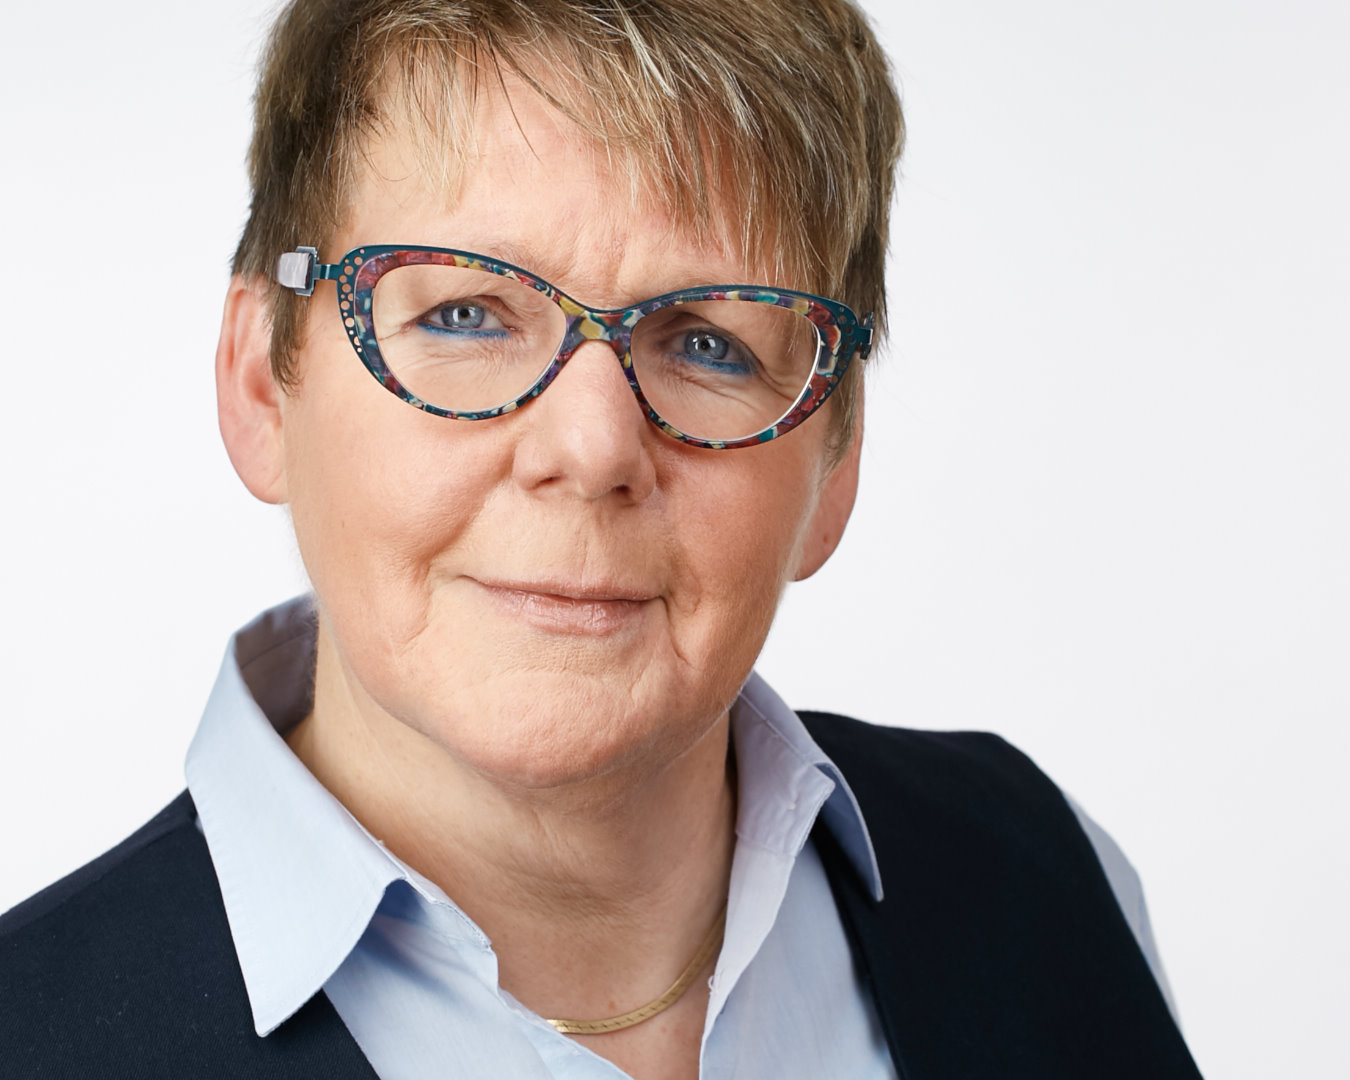 Profilfotos für weibliche Führungskräfte aus dem Headshot Fotostudio Bonn